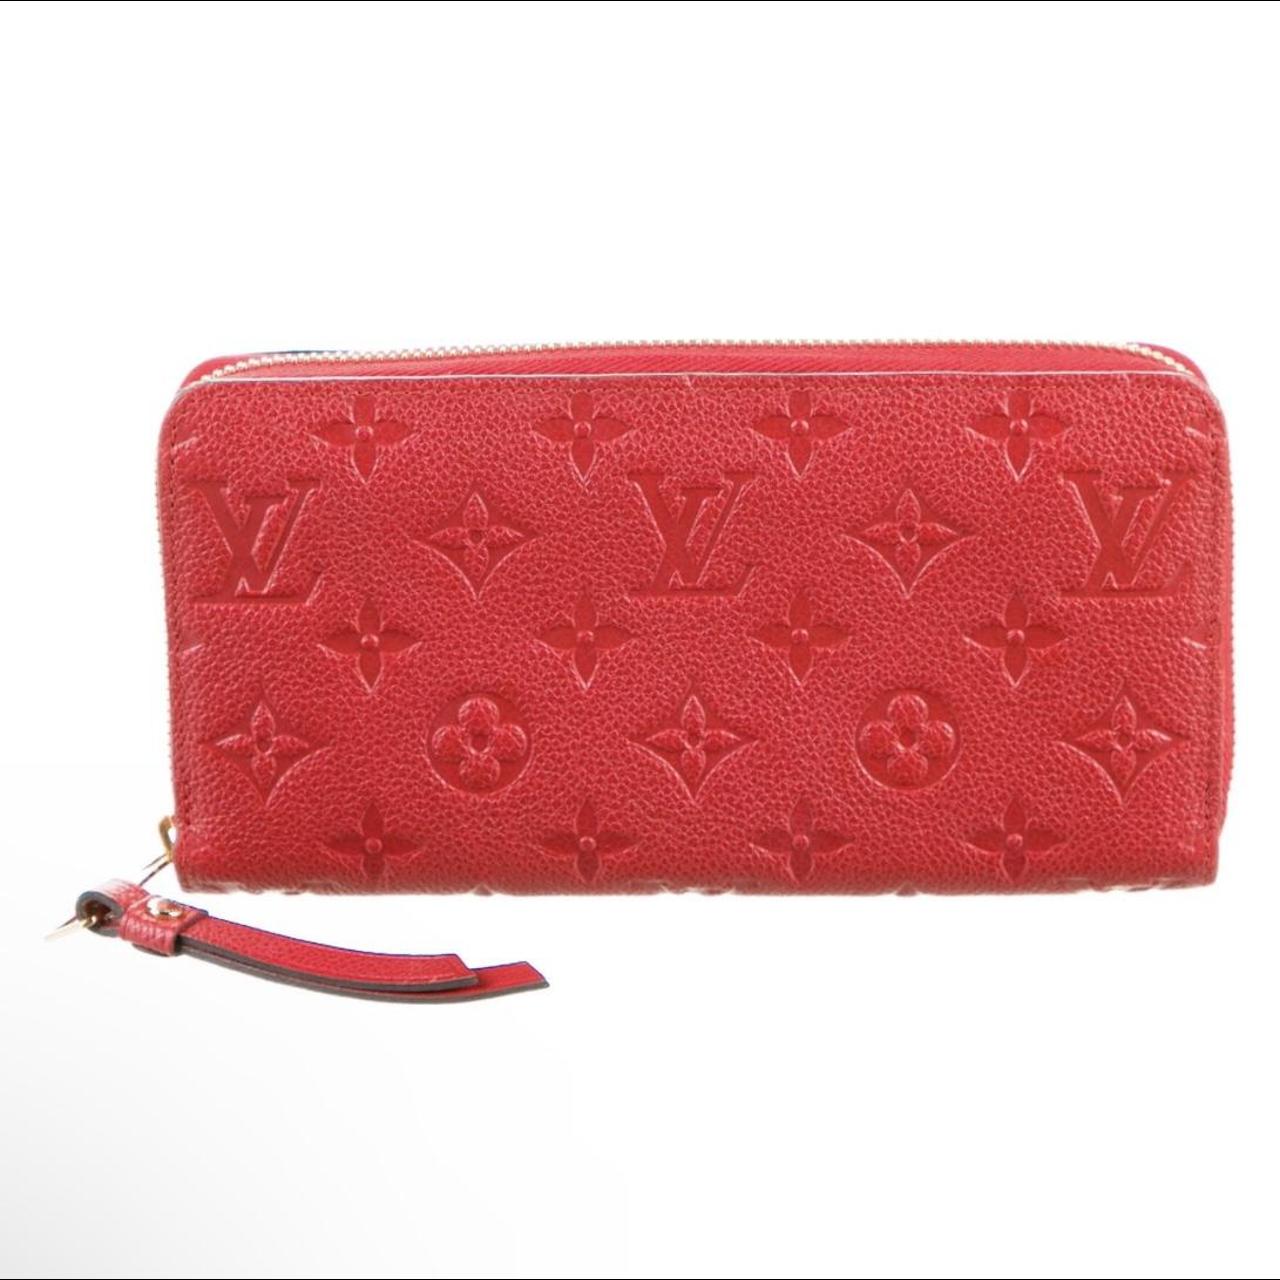 louis vuitton women's wallet red inside